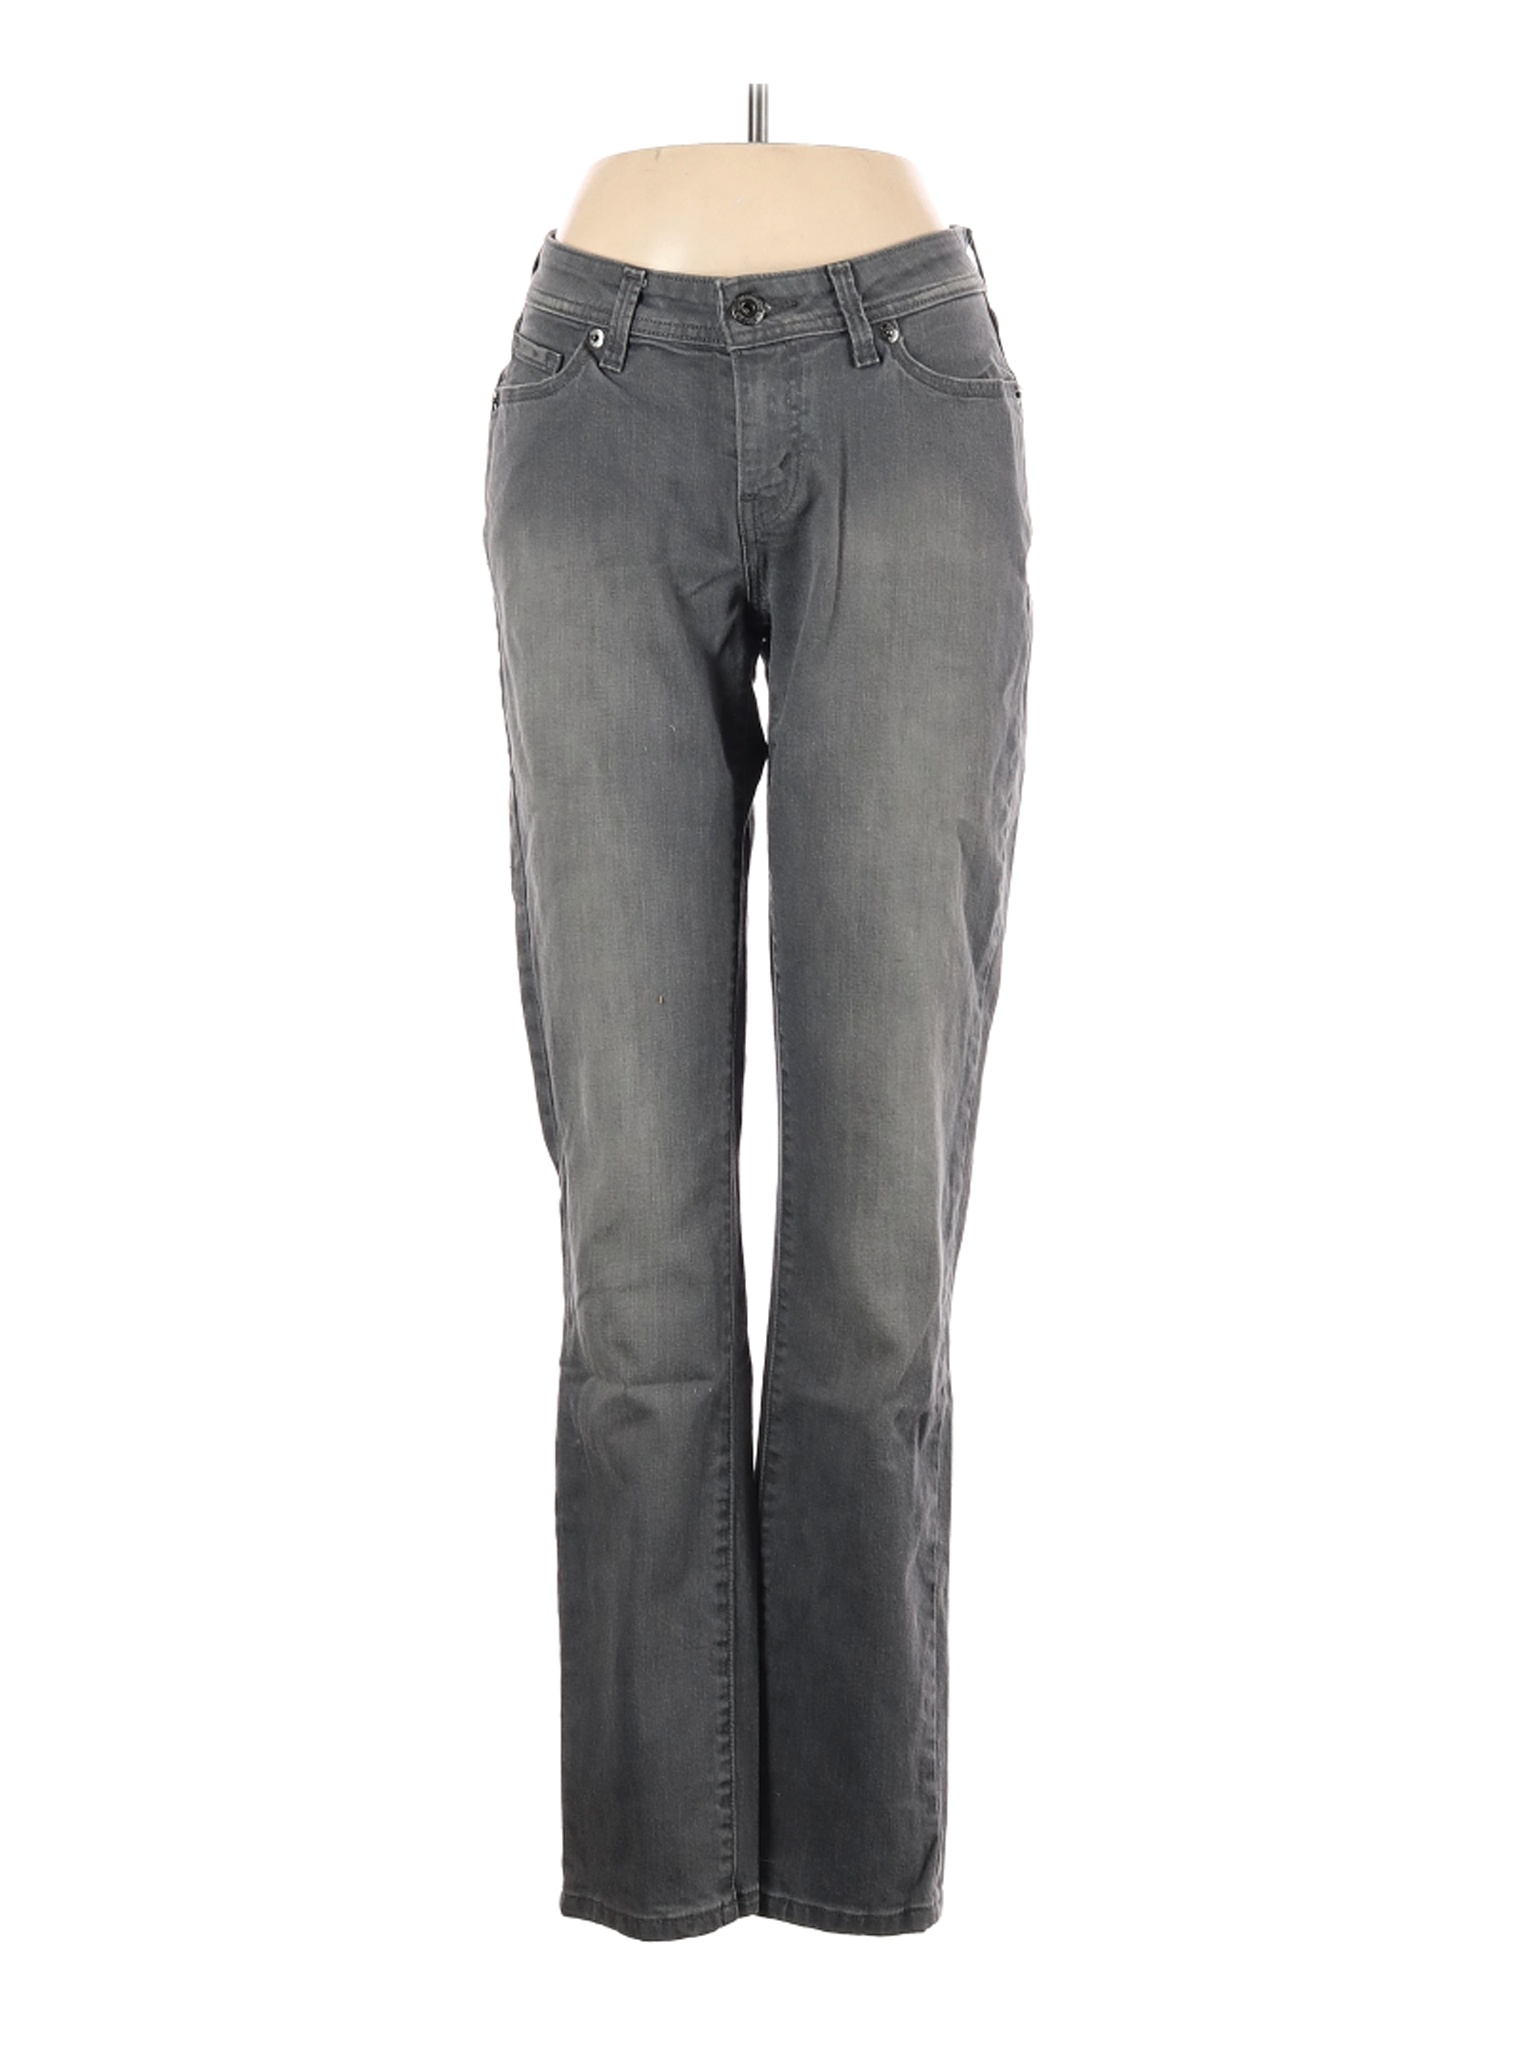 Levi's Women Gray Jeans 6 | eBay